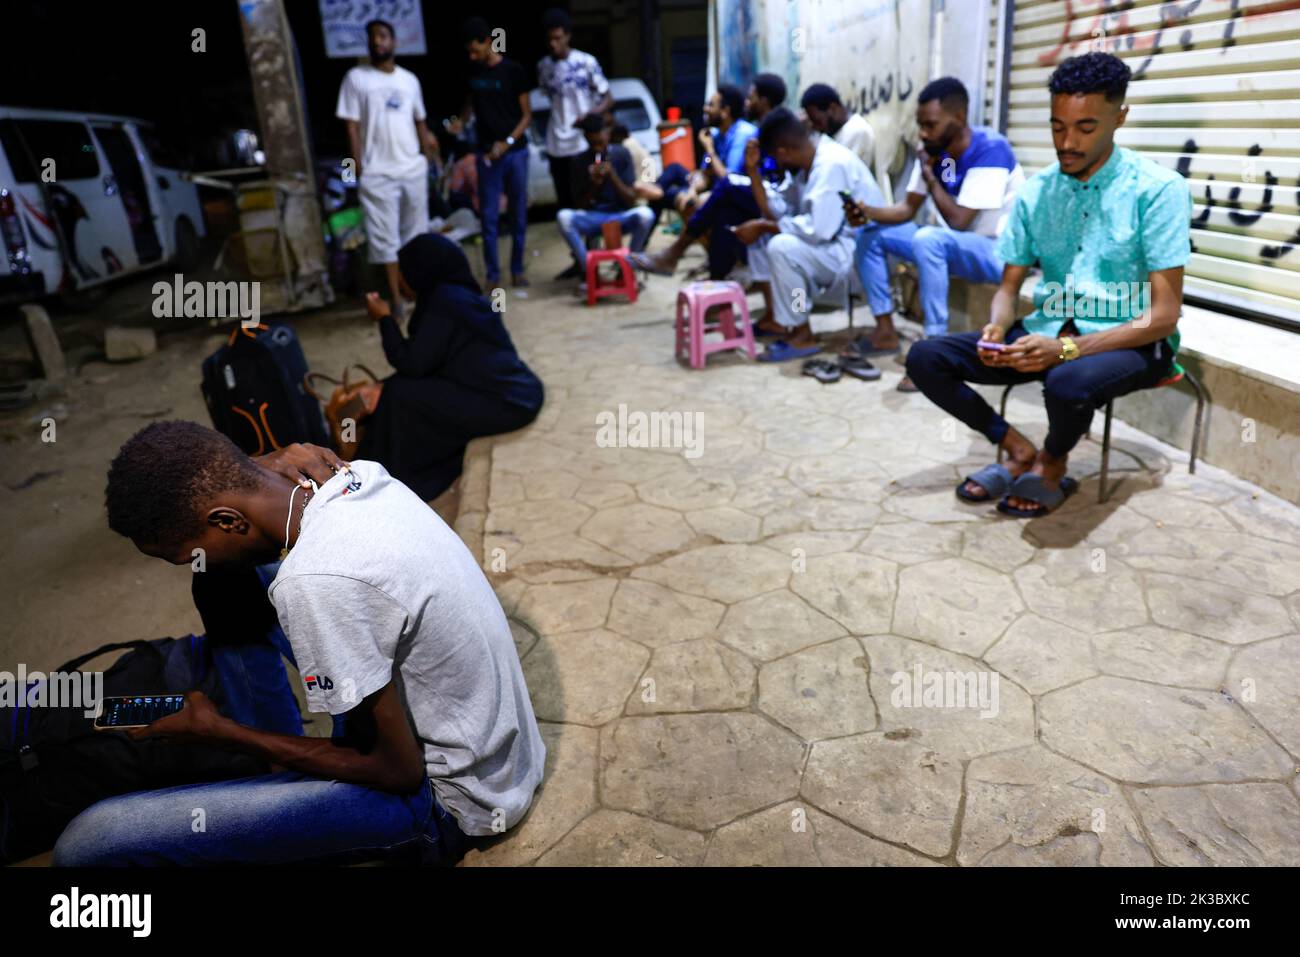 People wait for the a before leaving to Egypt in Khartoum, Sudan September 24, 2022. REUTERS/Mohamed Nureldin Abdallah Stock Photo